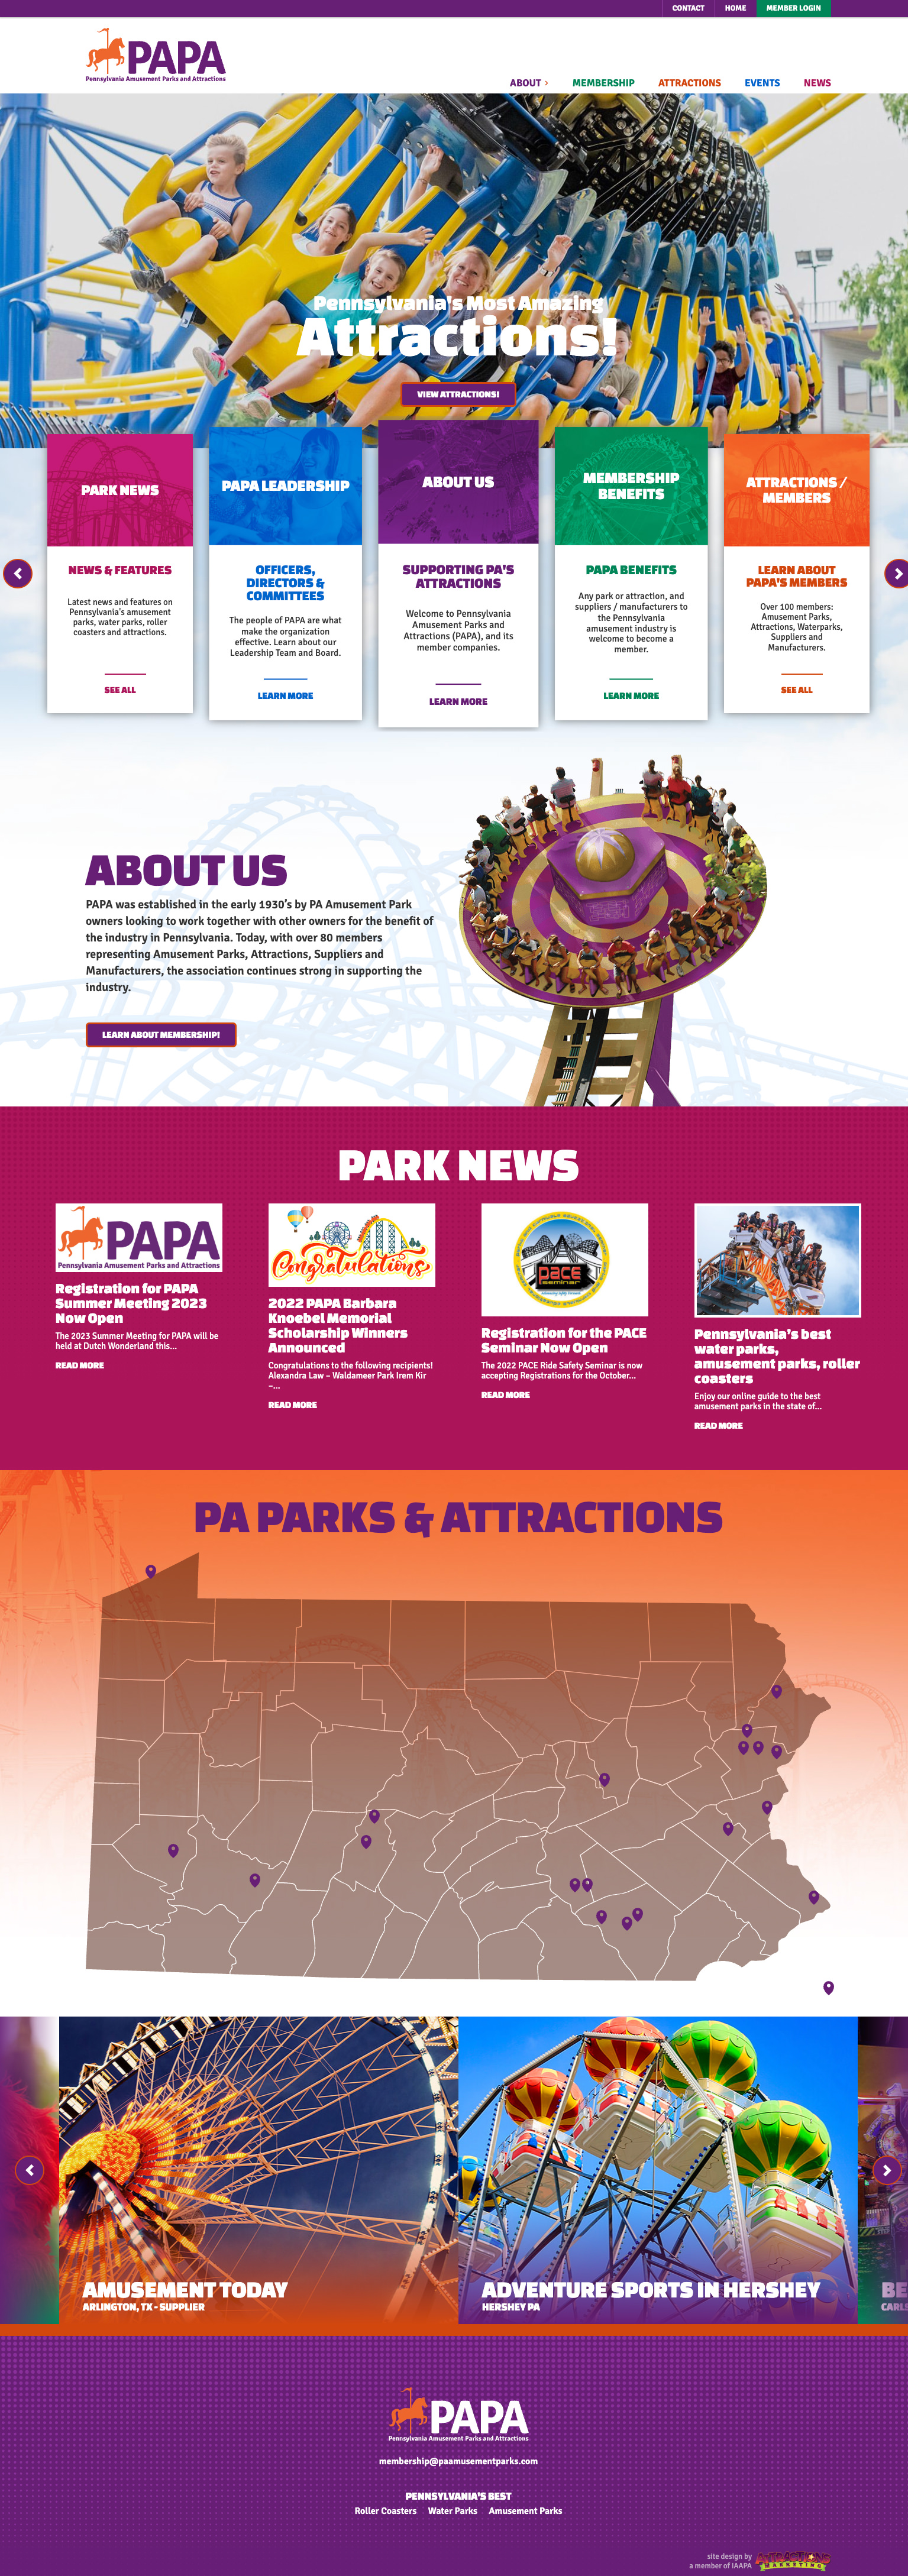 PAPA Home Page